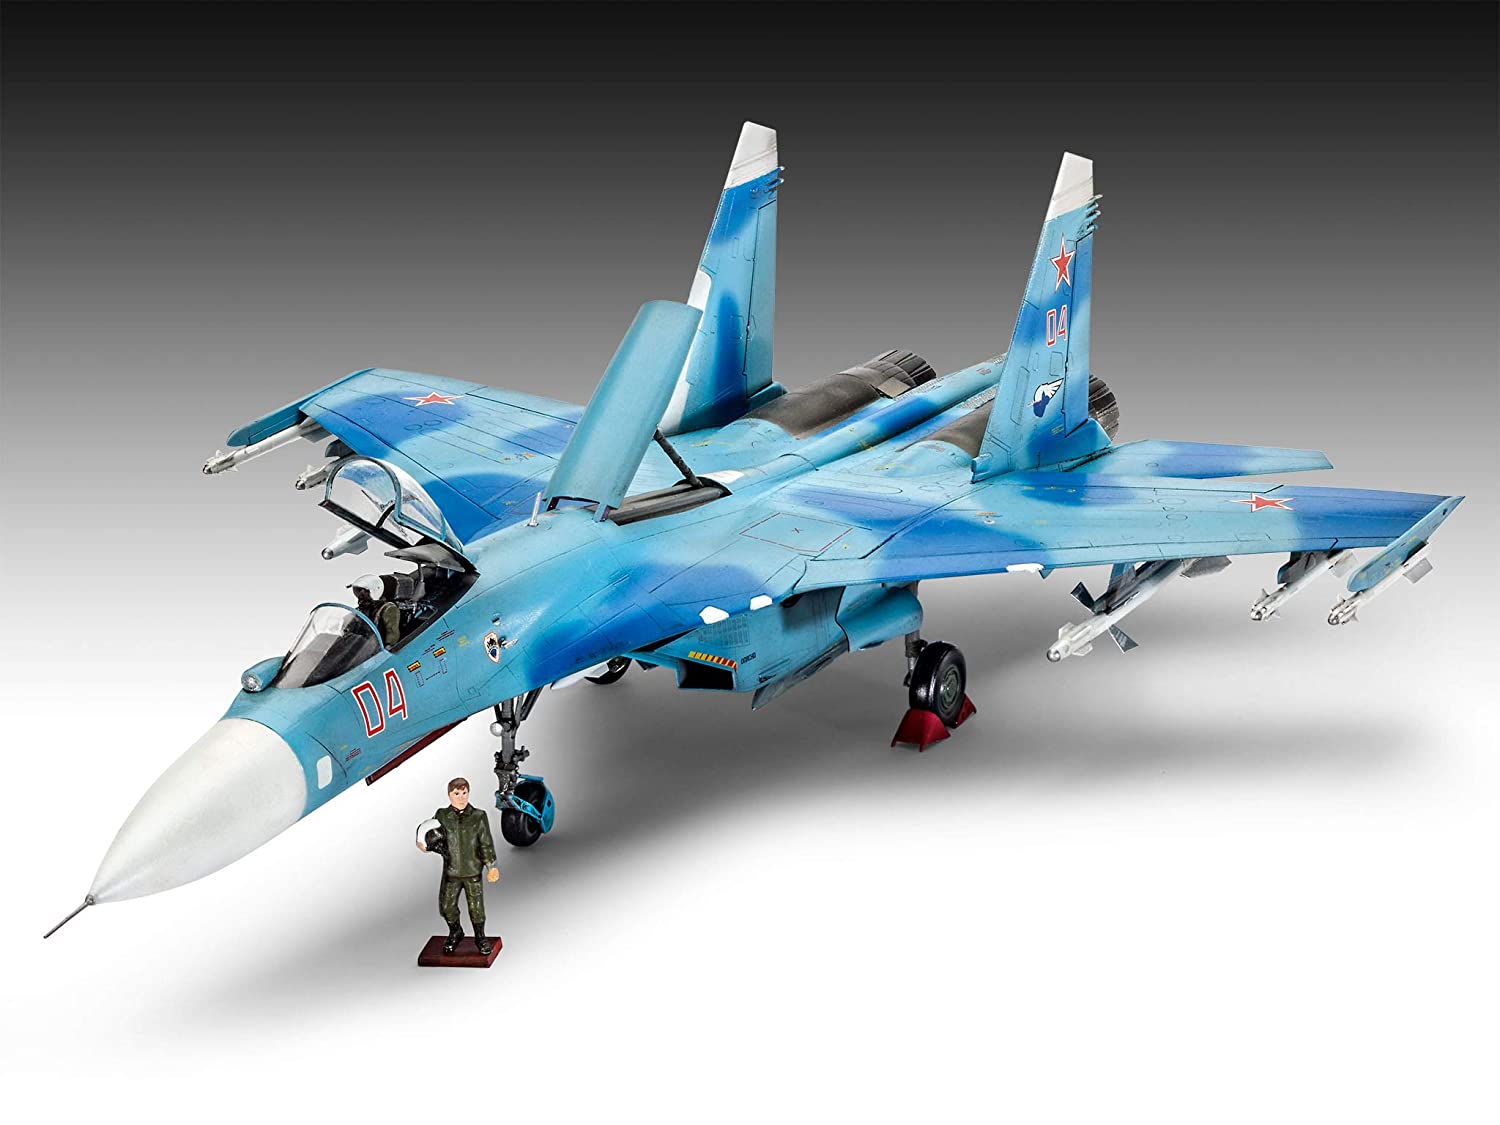 Модель су 27. Фланкер самолет Су-27. Камуфляж Су-27 Flanker. Су 27 Flanker модель. Су-27 фланкер 01 модель.